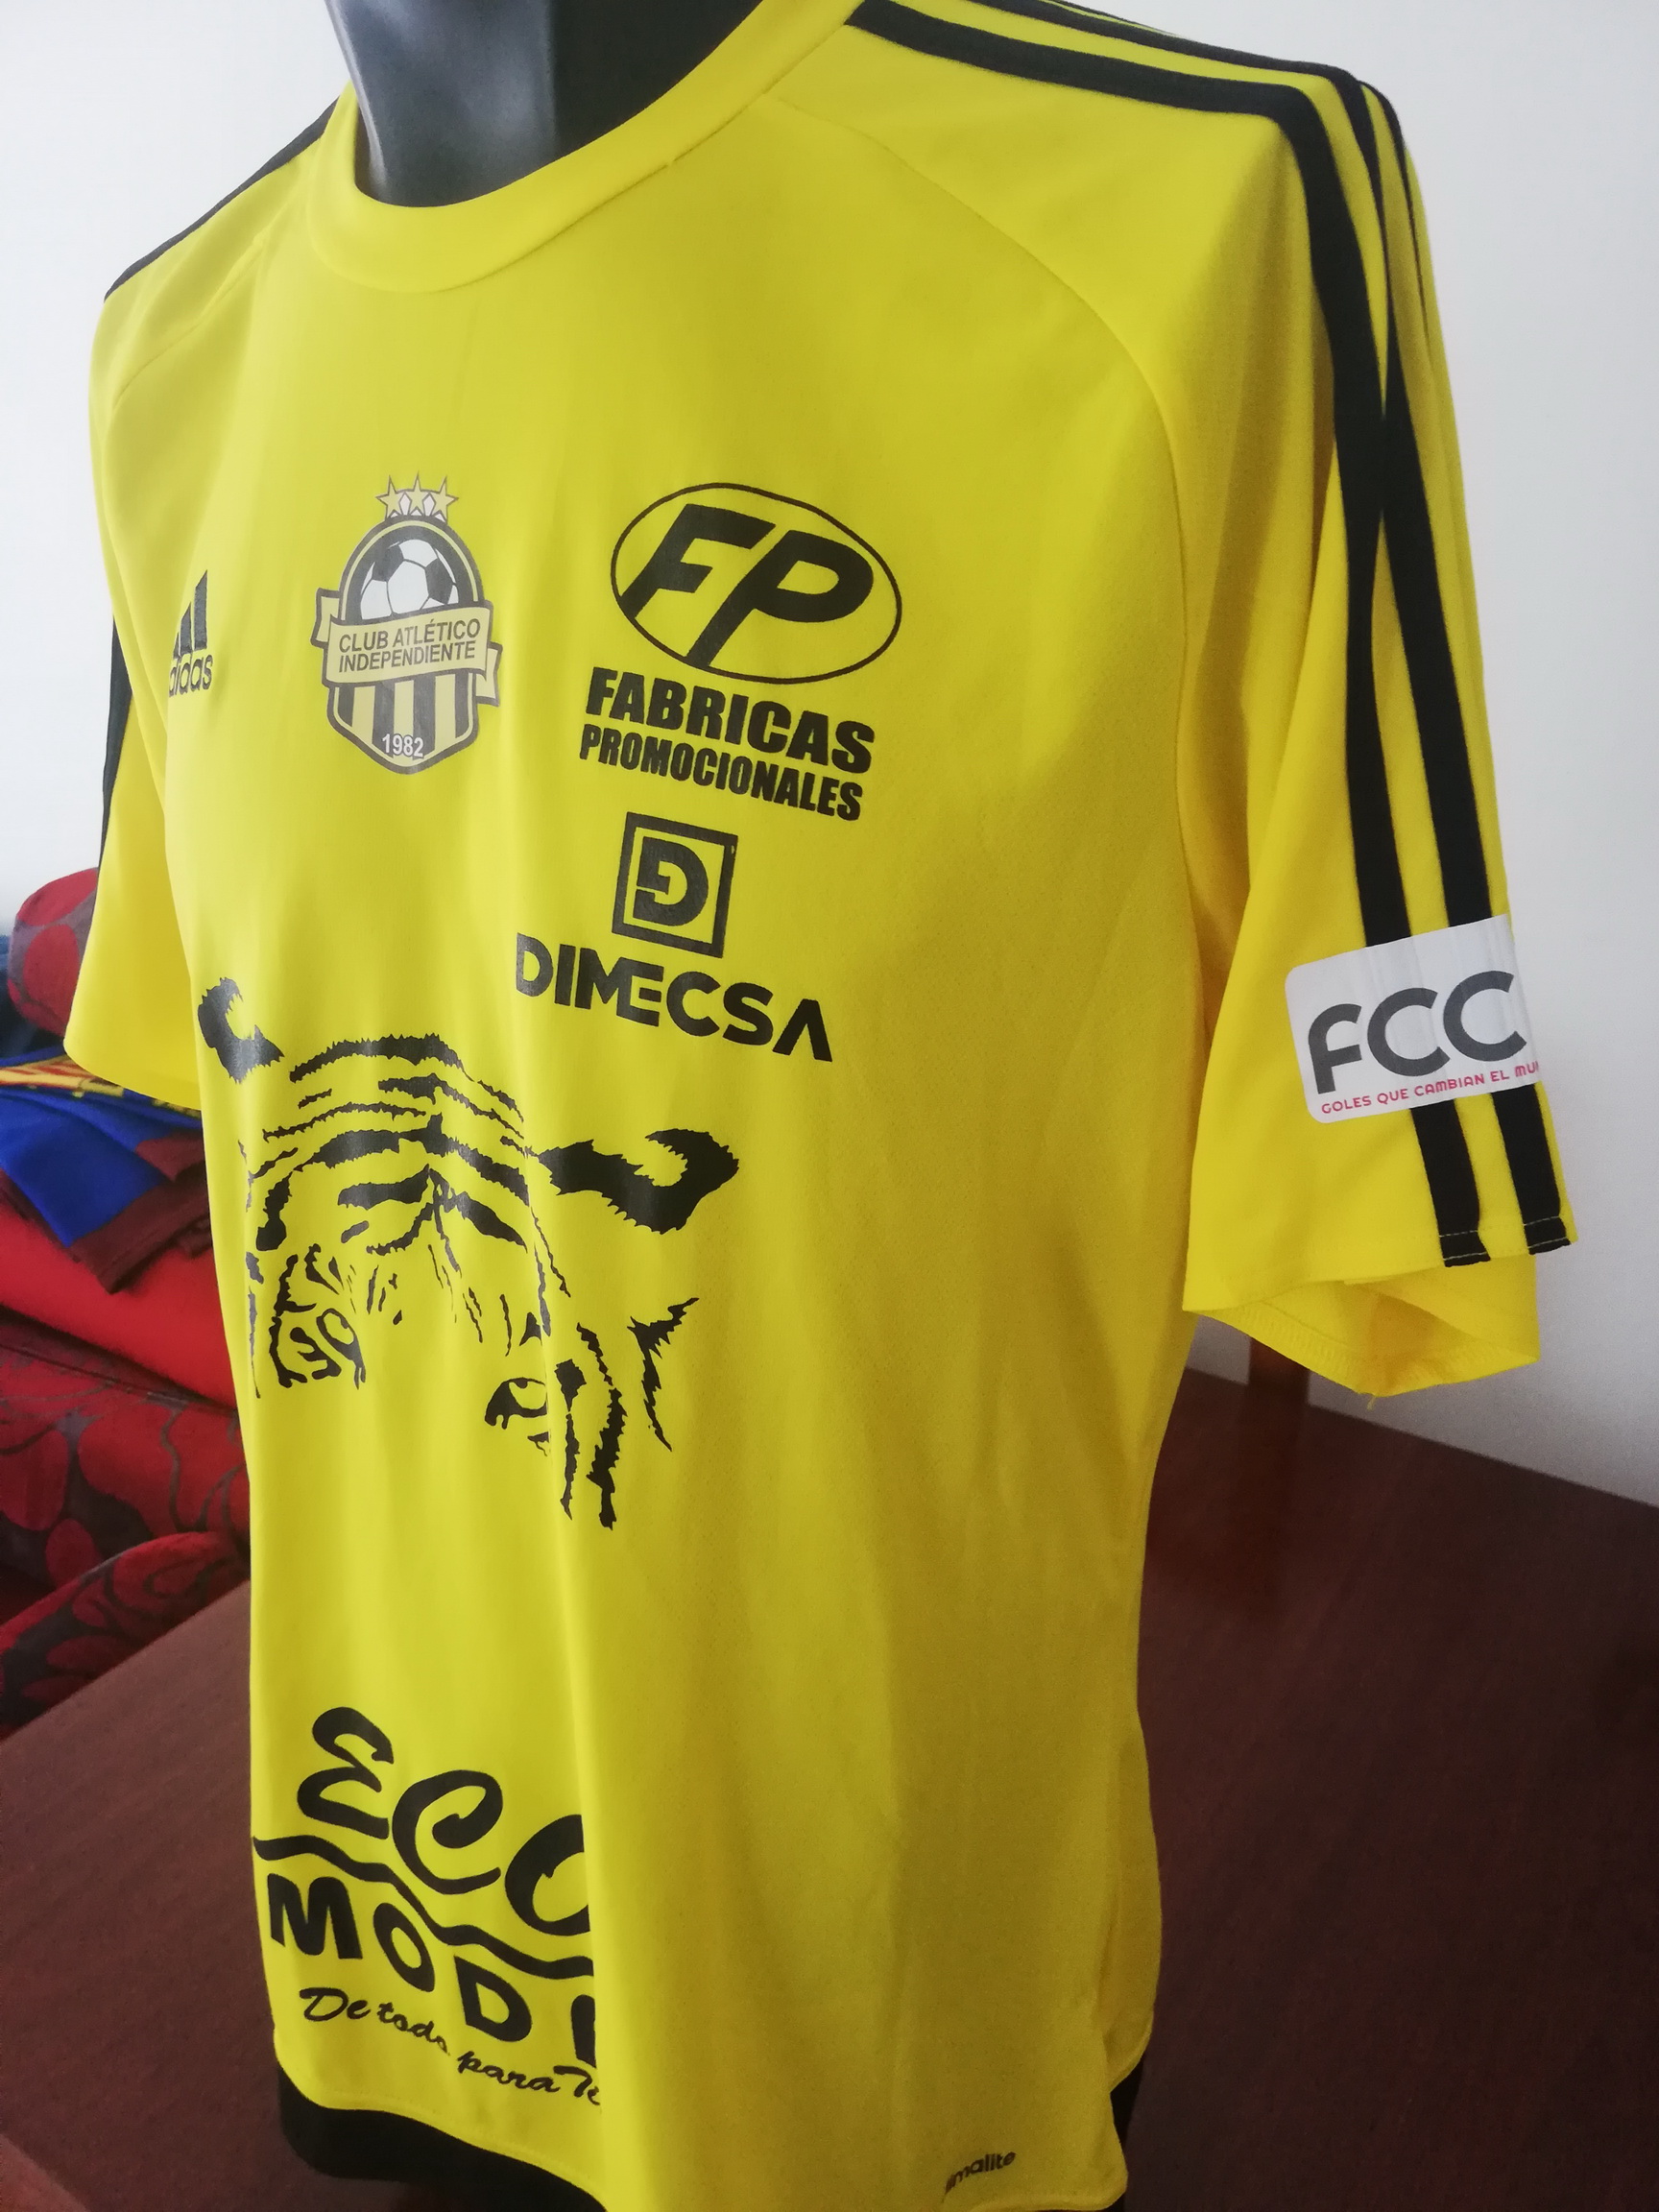 Futbolcoleccioncamisetas - CAI 🇵🇦 - 2018/2019 Camiseta del club Atletico  Independiente de Panamá. Uno de los punteros de la liga panameña, que  gracias al gran @panchitox27 puedo tener en mi colección, un